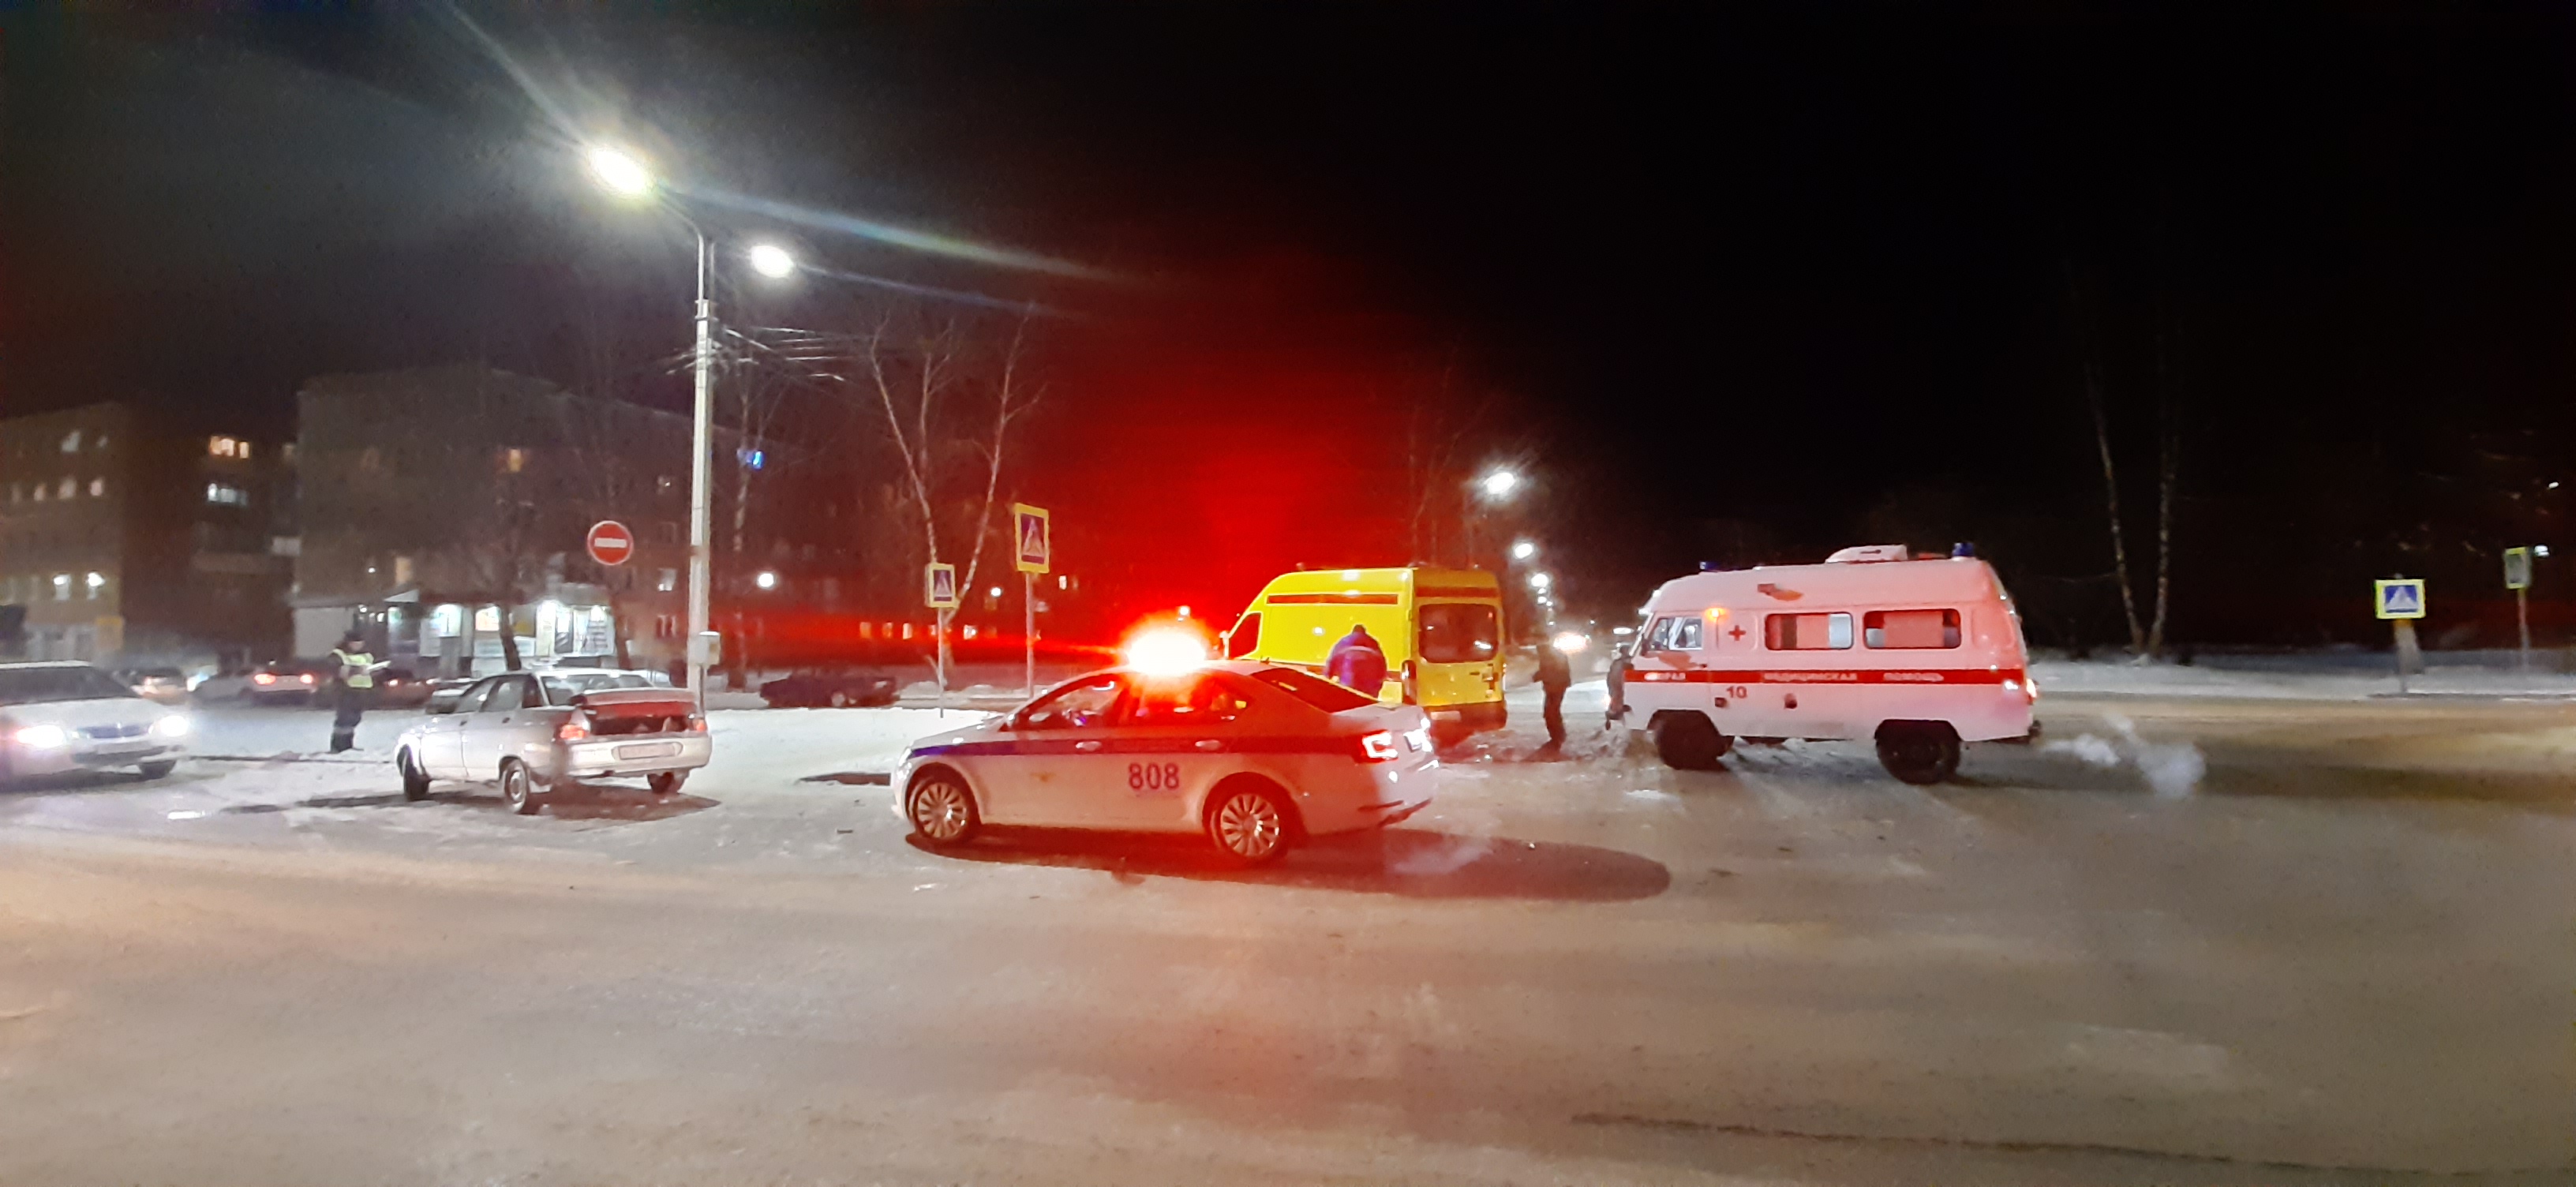 Один человек получил травмы в ДТП с машиной скорой помощи в Кузбассе